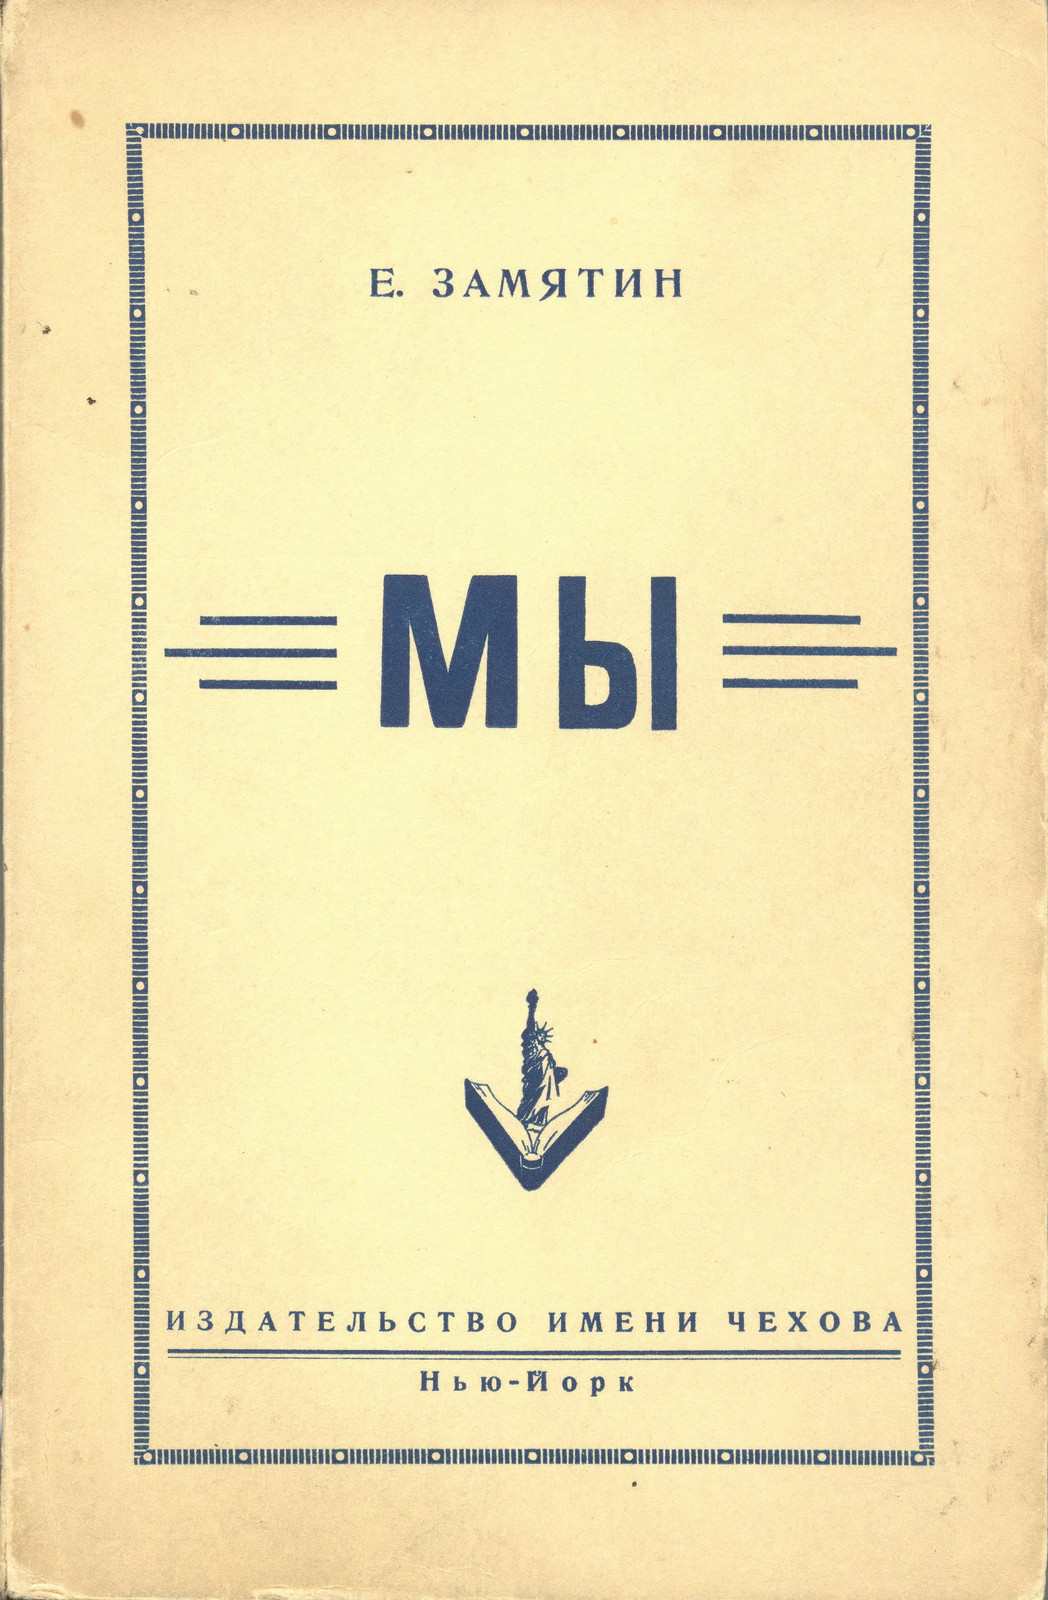 Обложка первого полного издания романа на&nbsp;русском языке (Издательство имени Чехова, 1952&nbsp;год)